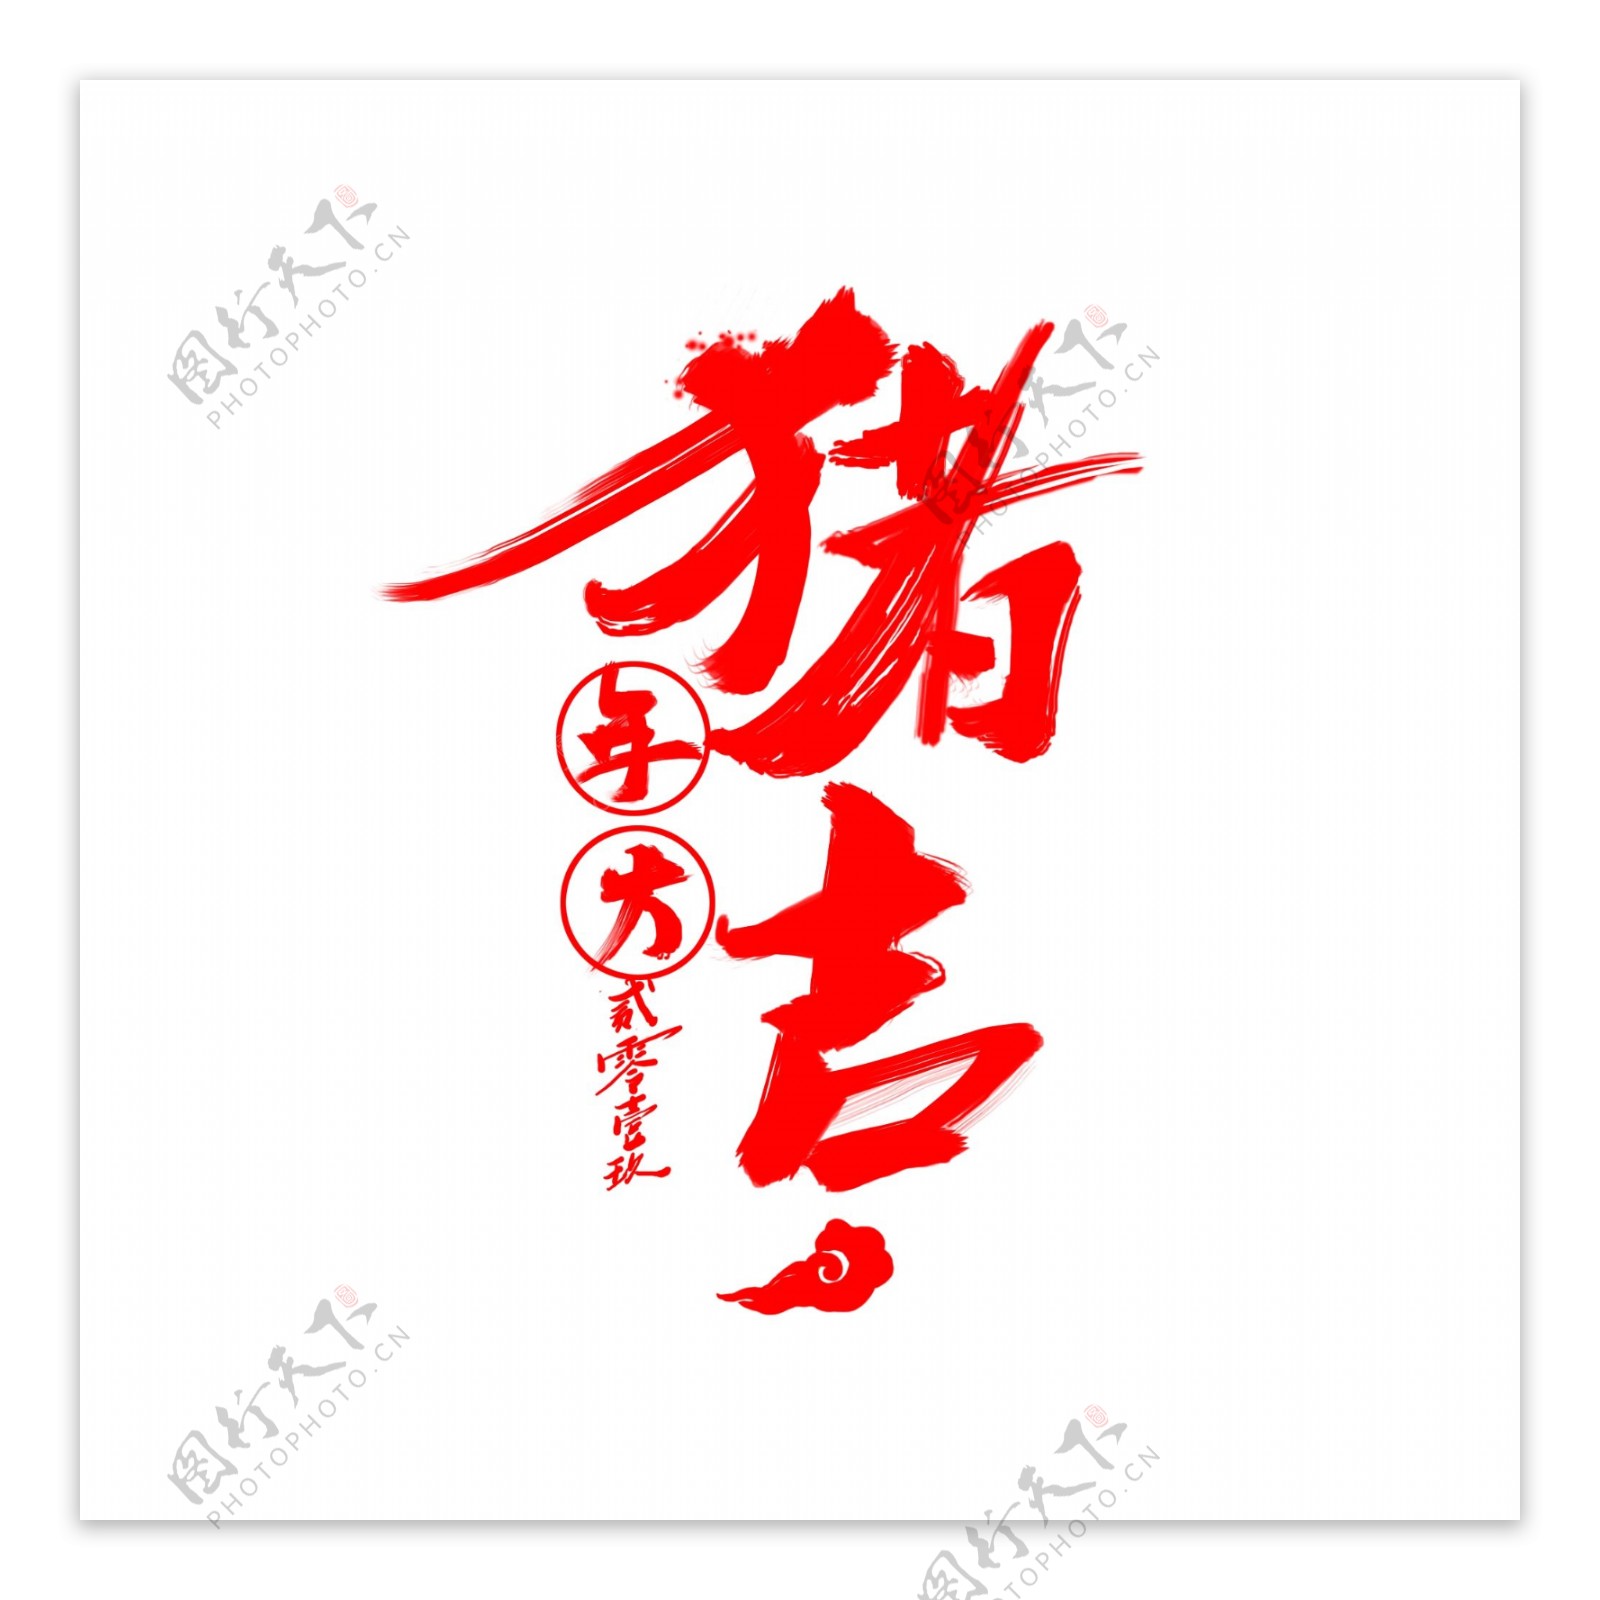 原创猪年大吉中国风艺术字书法创意字体